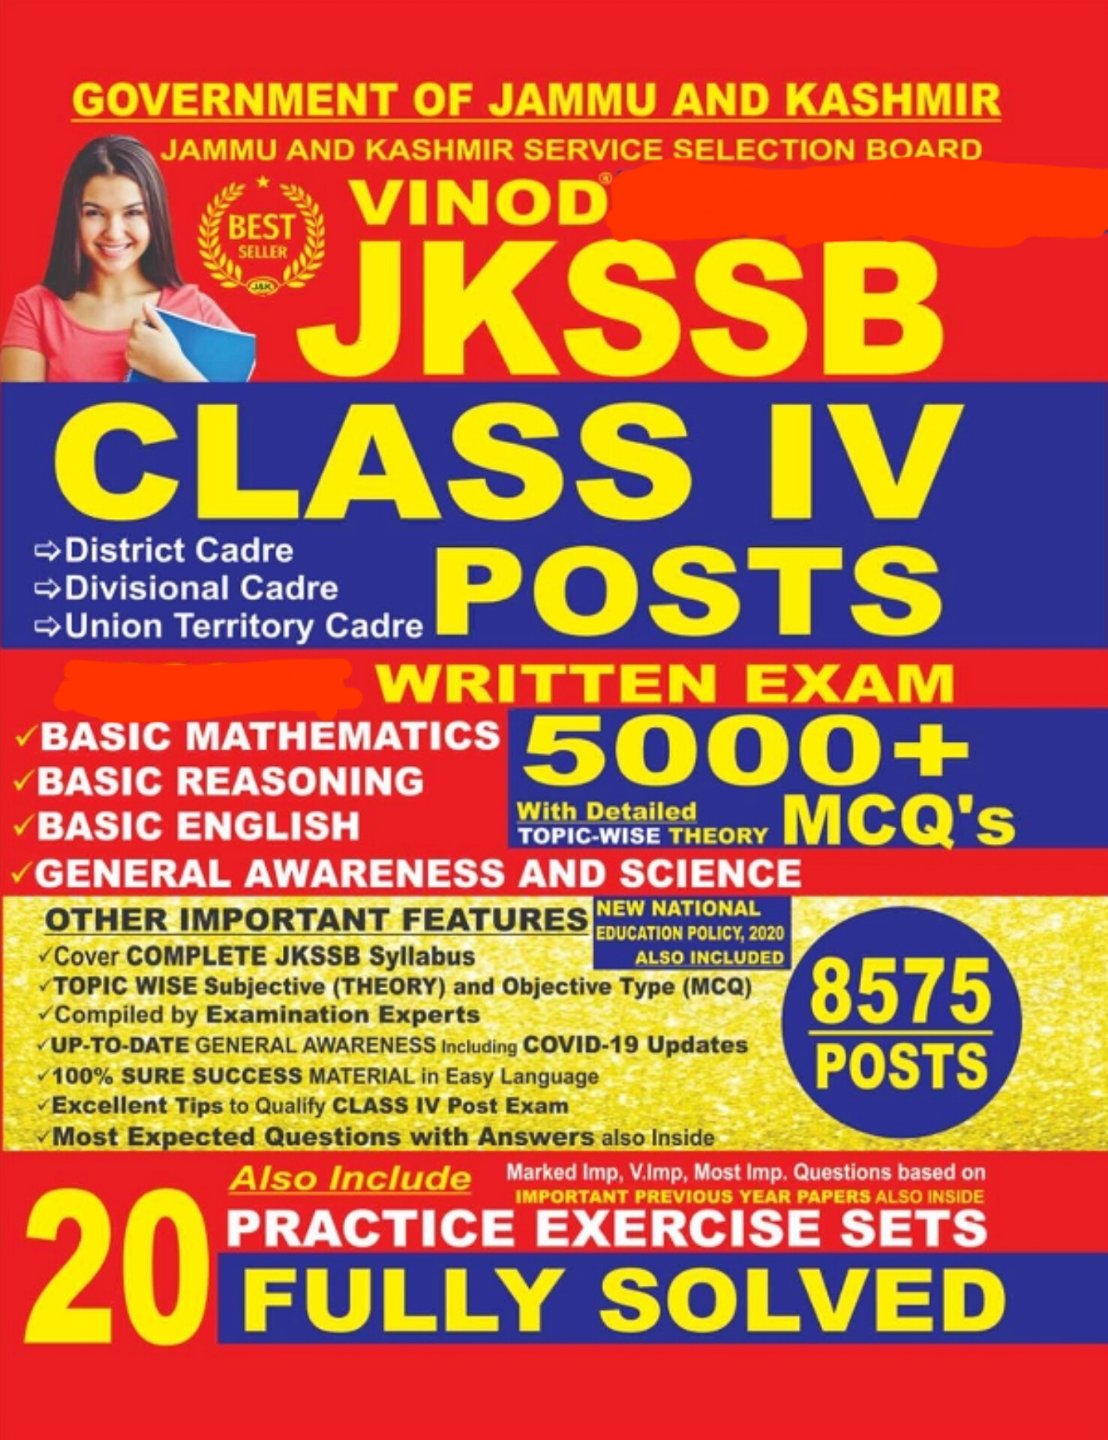 Vinod JKSSB Class IV Posts Book ; VINOD PUBLICATIONS ; CALL 9218219218